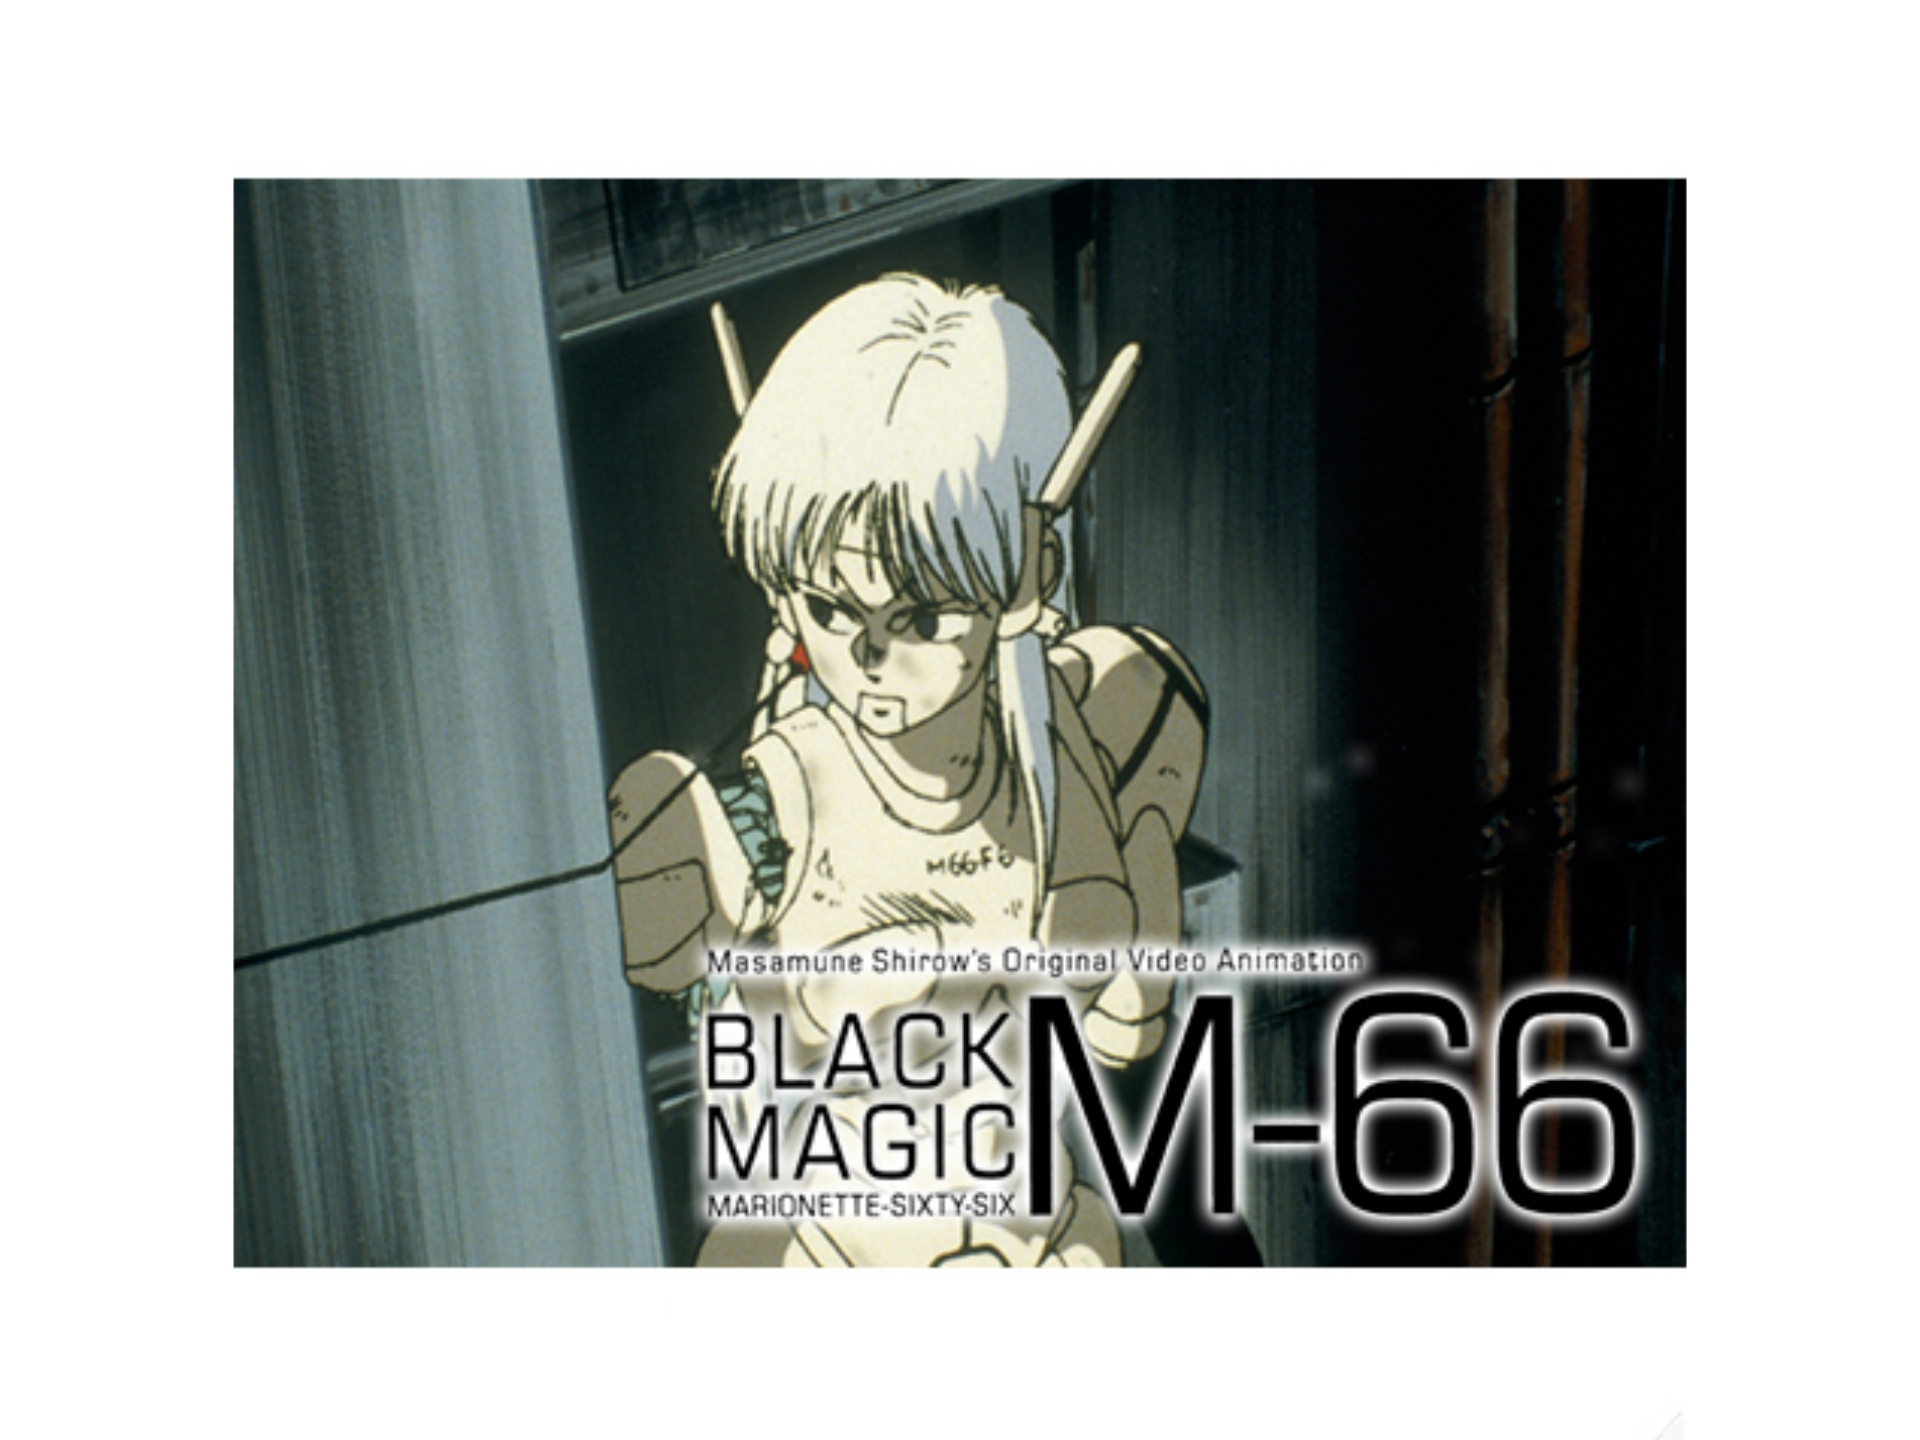 アニメ ブラックマジック M 66 の動画 初月無料 動画配信サービスのビデオマーケット